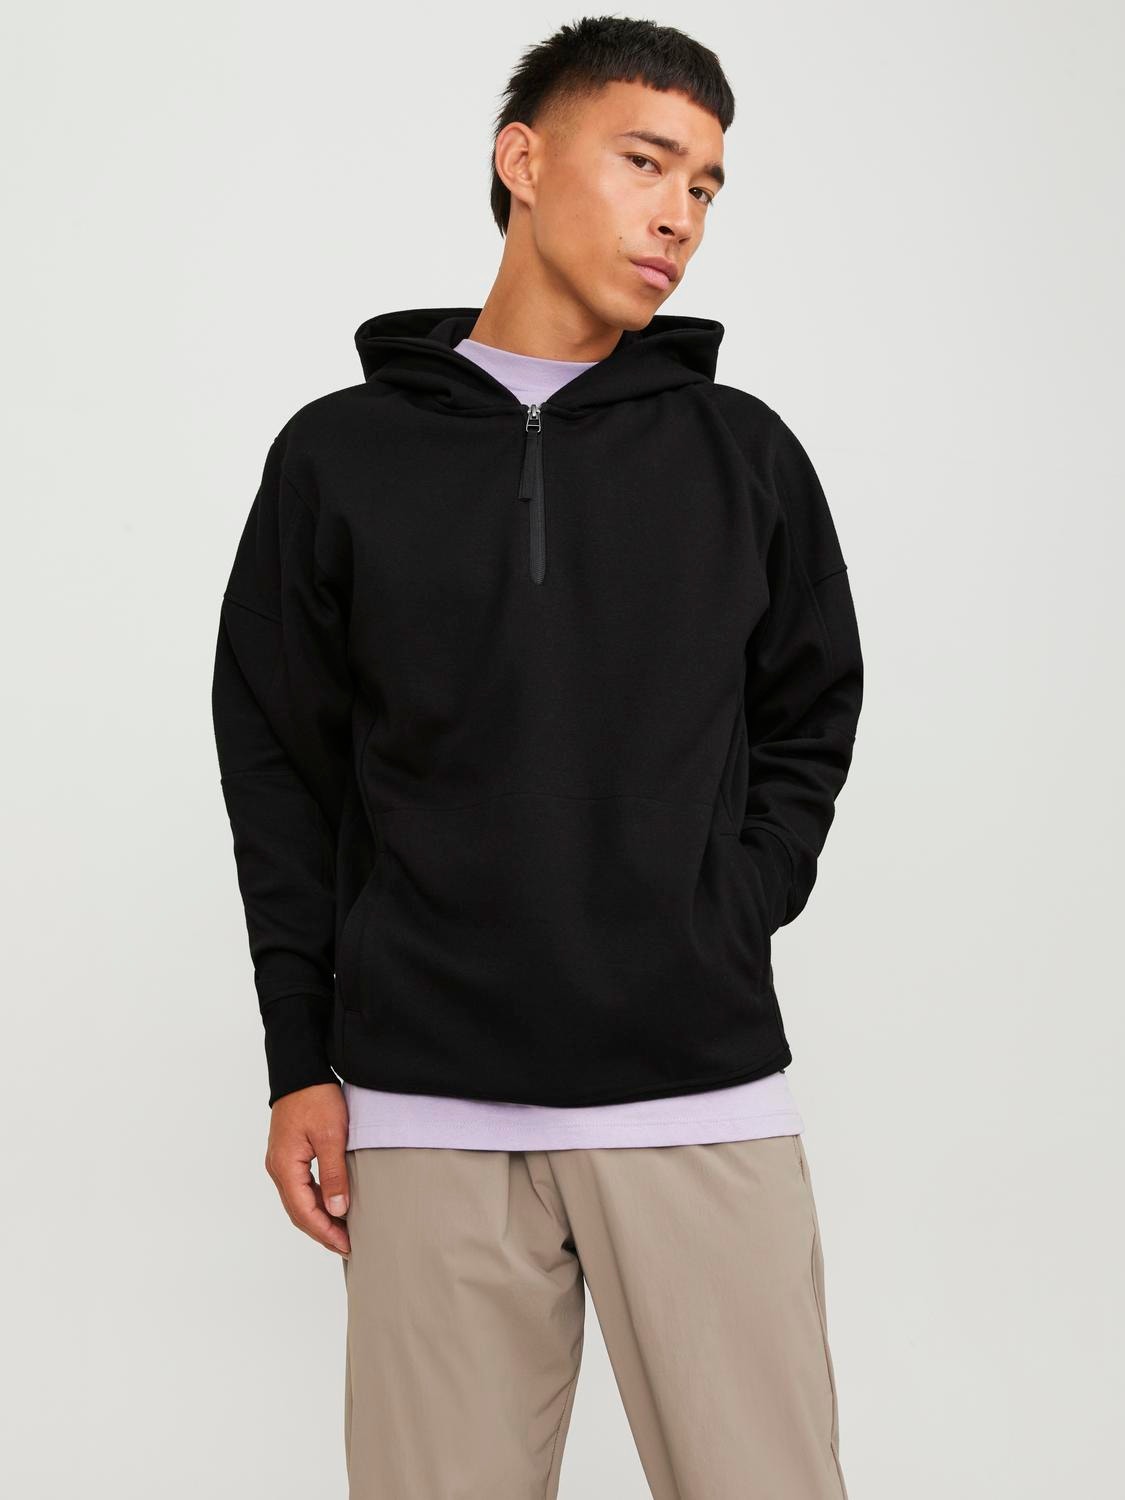 Plain Zip Sweatshirt with 30% discount! | Jack & Jones®